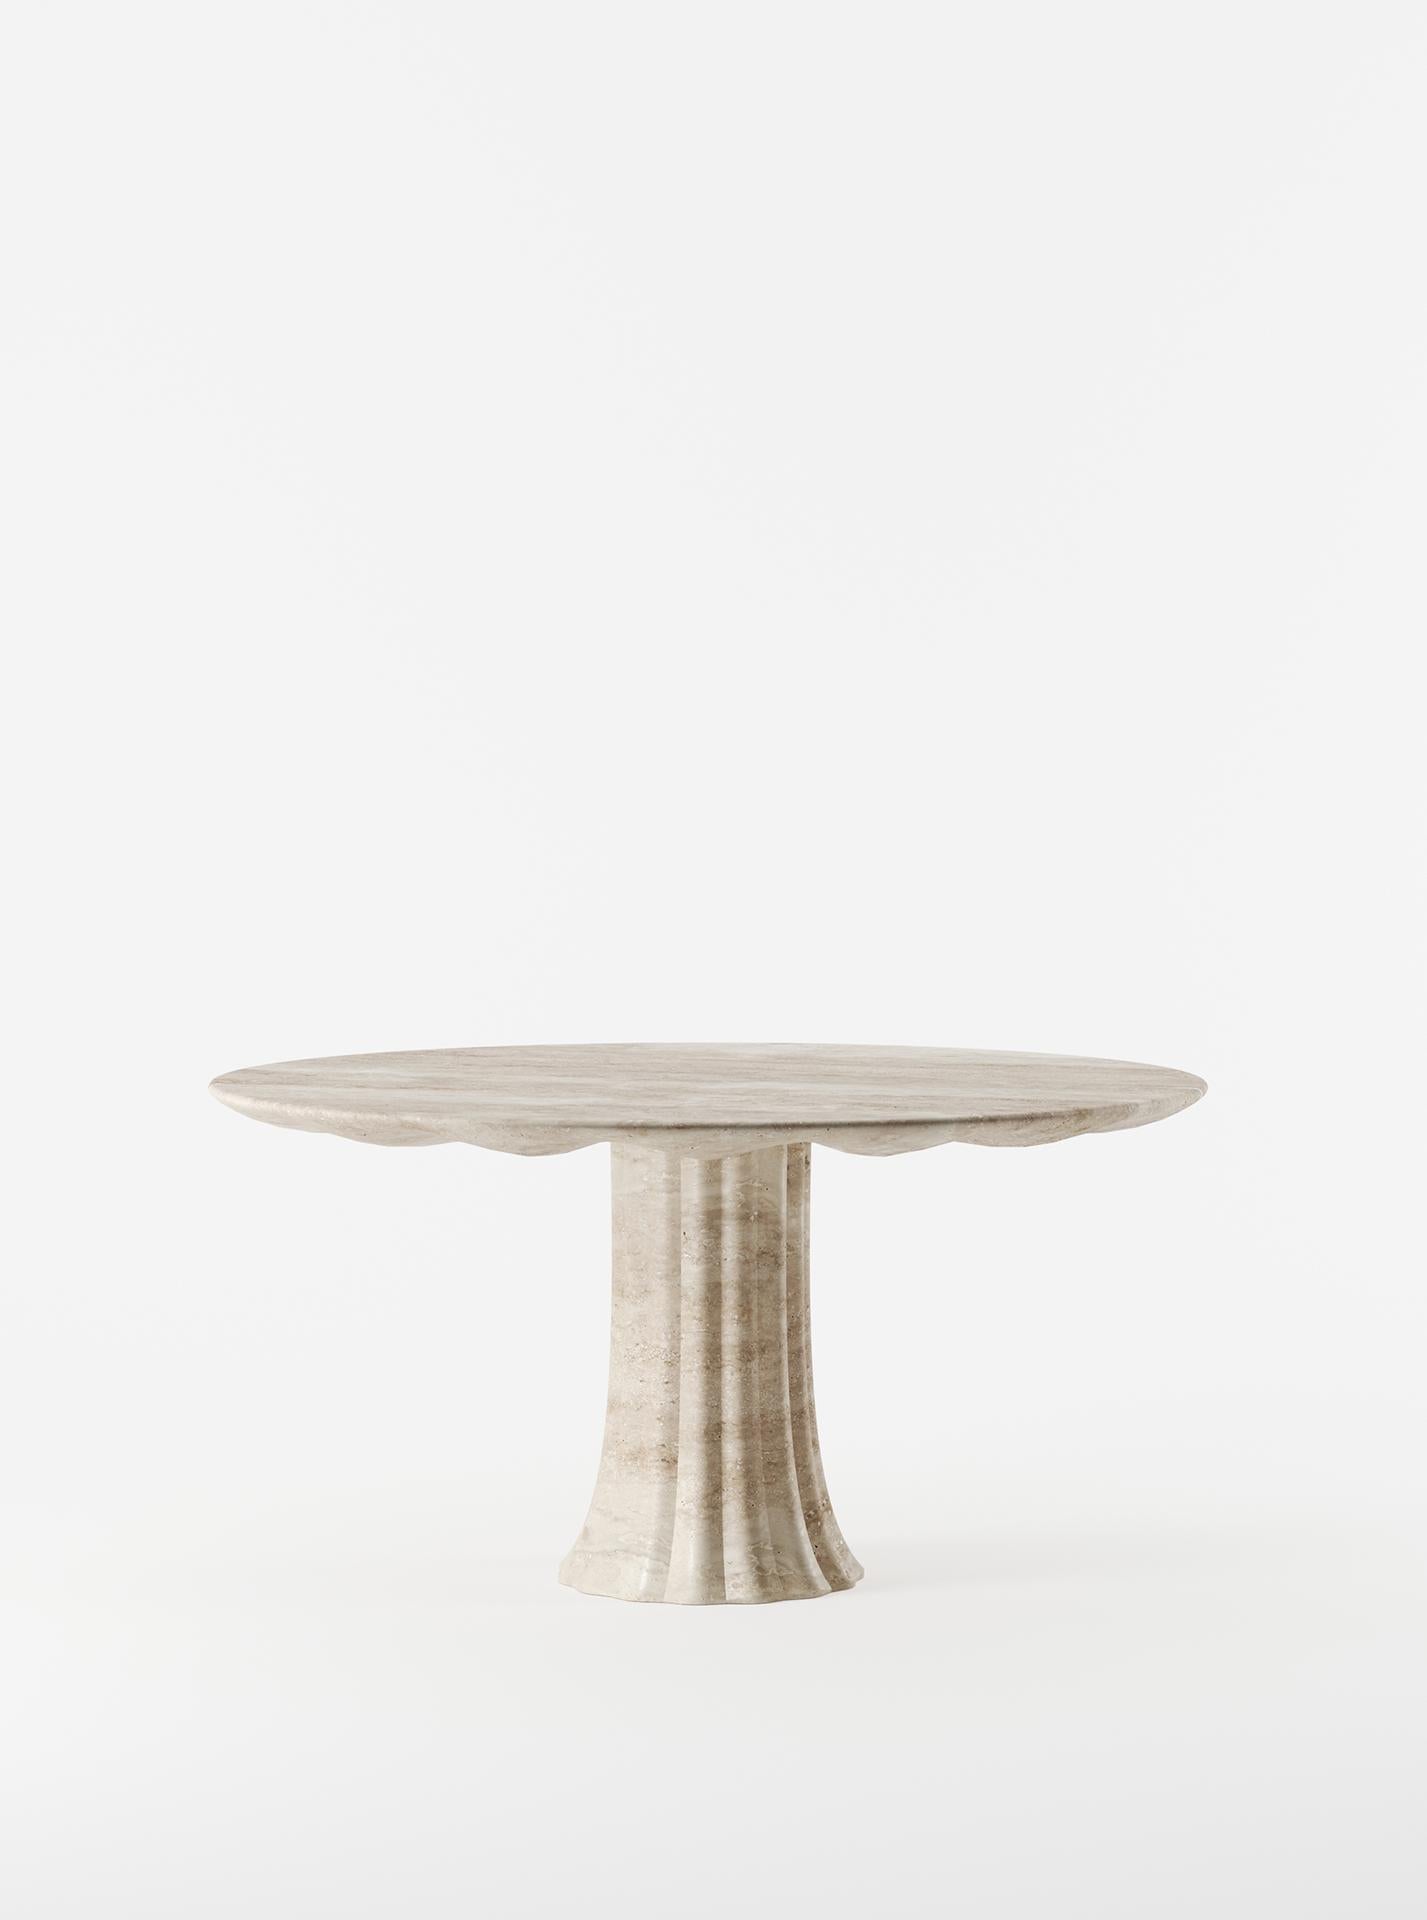 Le designer Yaniv Chen, qui se distingue par son sens de la nostalgie, évoque les influences à l'origine de la table Drapery, une pièce unique fabriquée en Italie à partir d'un seul bloc de travertin. D'abord inspiré par une pièce photographiée par